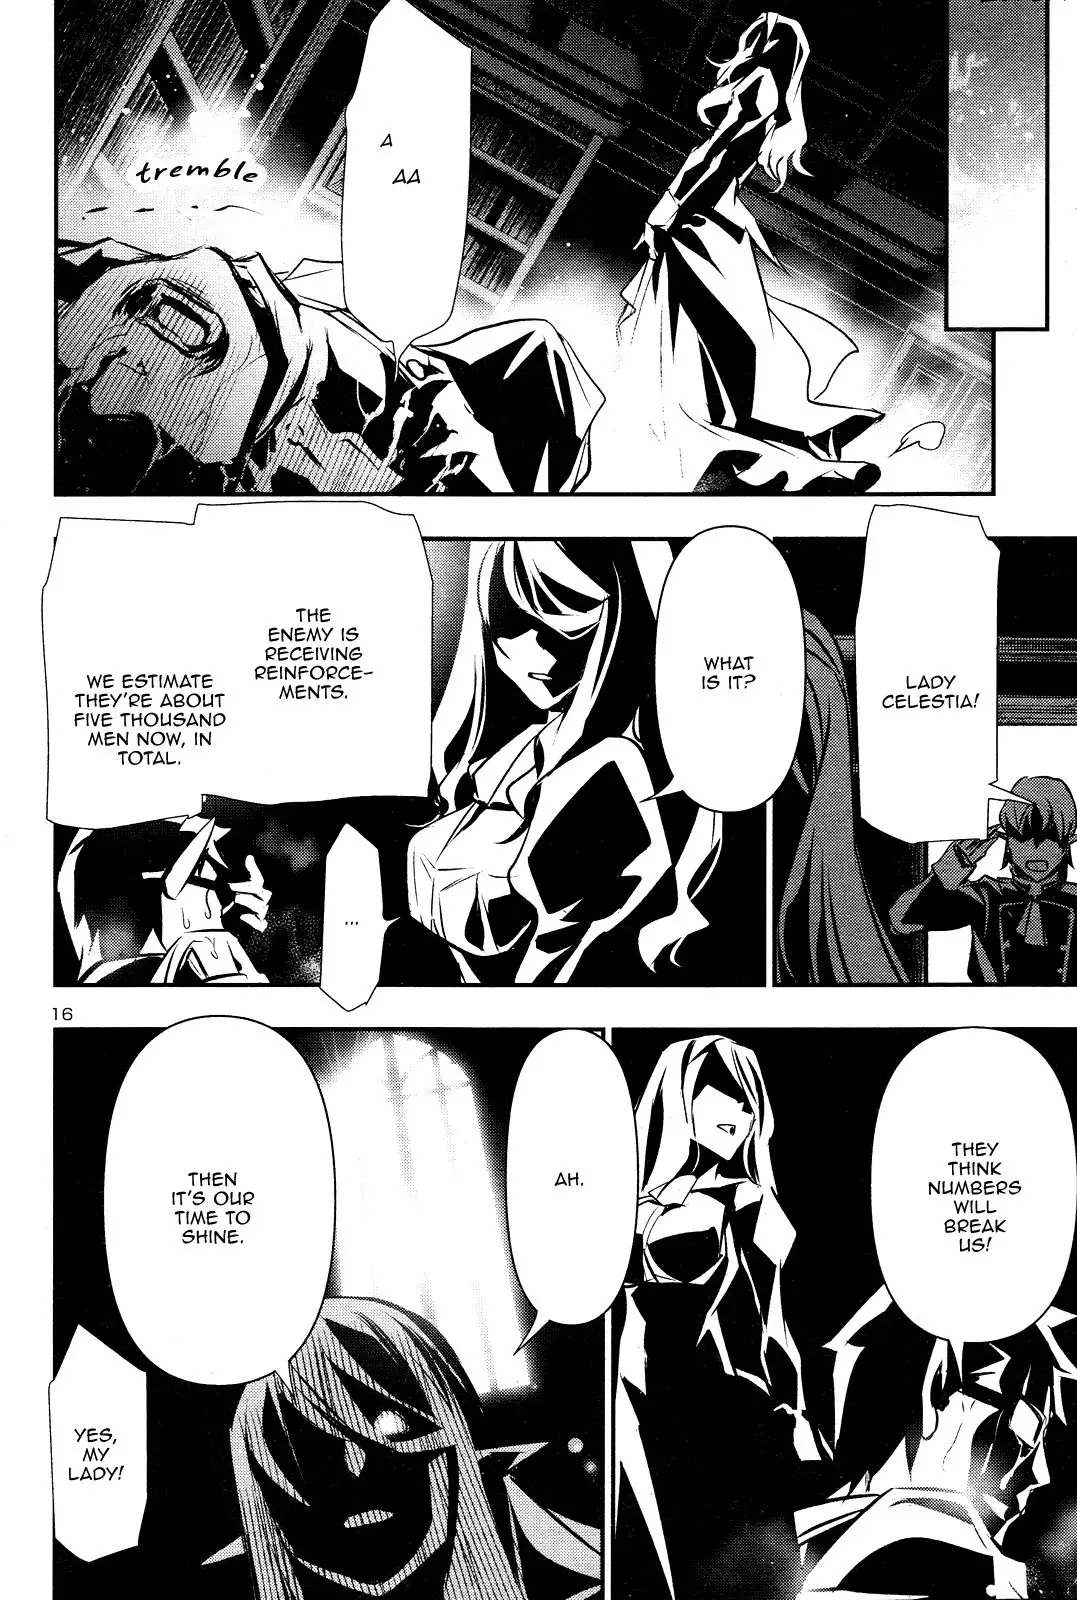 Shinju no Nectar - 42 page 16